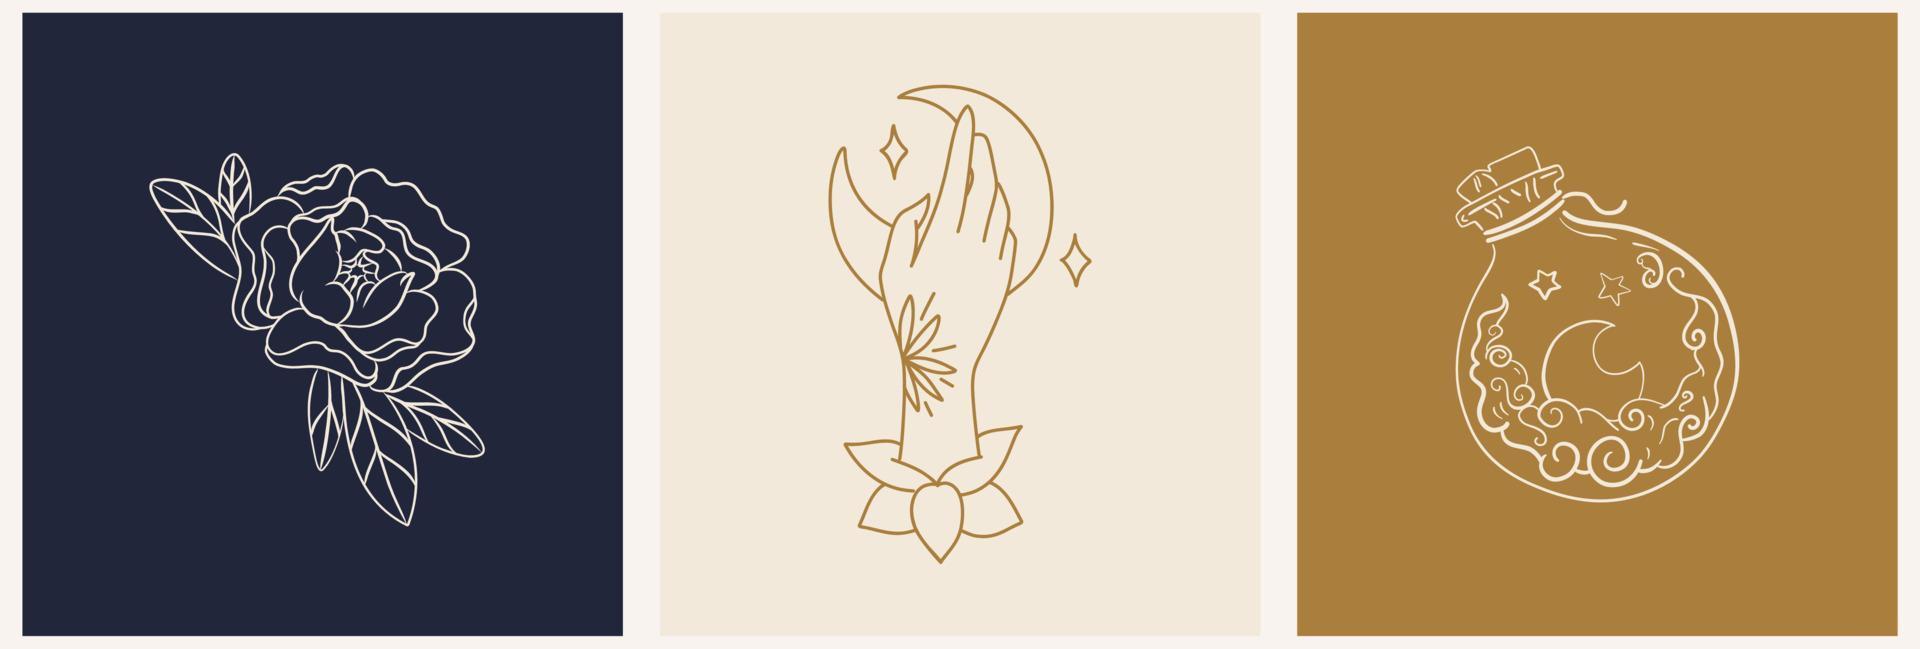 eine Reihe mystischer Vorlagen für ein Logo und Postkarten mit einem Trank, einer Hand und einer Rose. Morgendämmerung mit Blumen - Luxus- und Schmuckkonzepte für exklusive Dienstleistungen und Produkte, Beauty- und Spa-Branche vektor